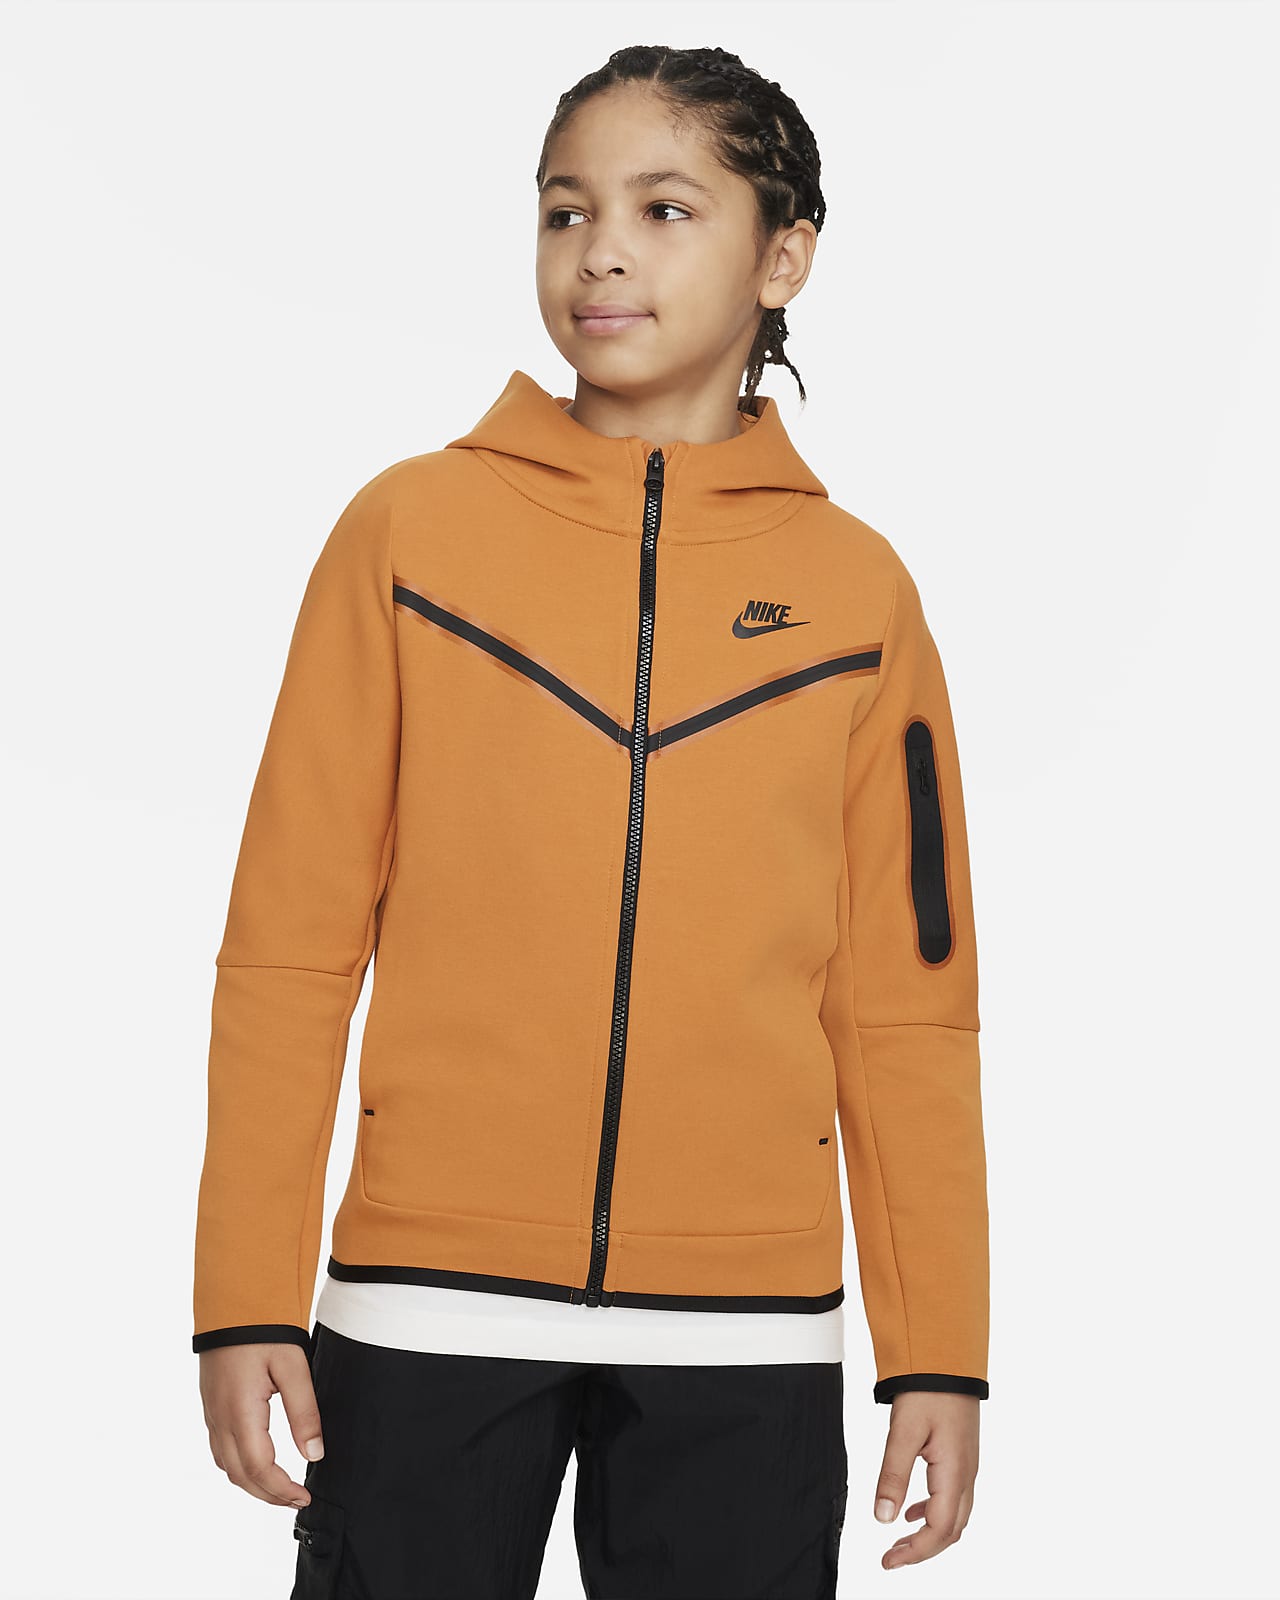 condoom Allemaal gebonden Nike Sportswear Tech Fleece Big Kids' (Boys') Full-Zip Hoodie. Nike.com